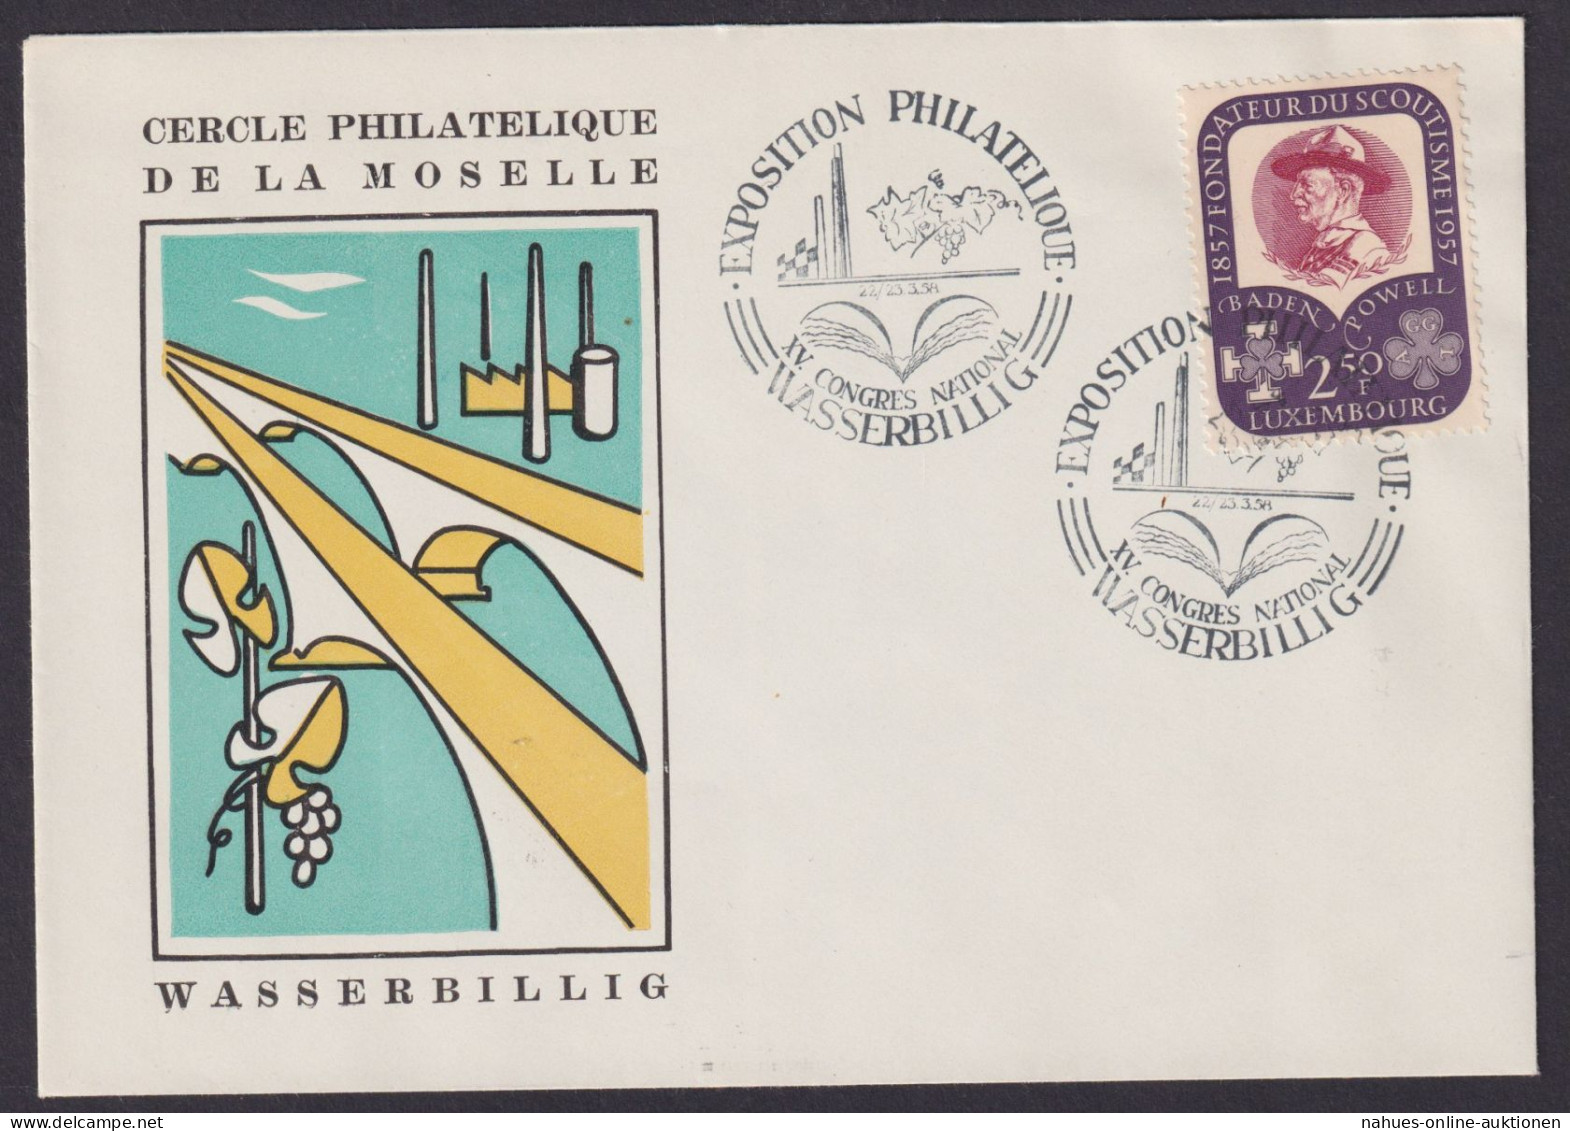 Wasserbillig Europa Luxemburg Philatelie Briefmarken Ausstellung Pfadfinder 1958 - Briefe U. Dokumente